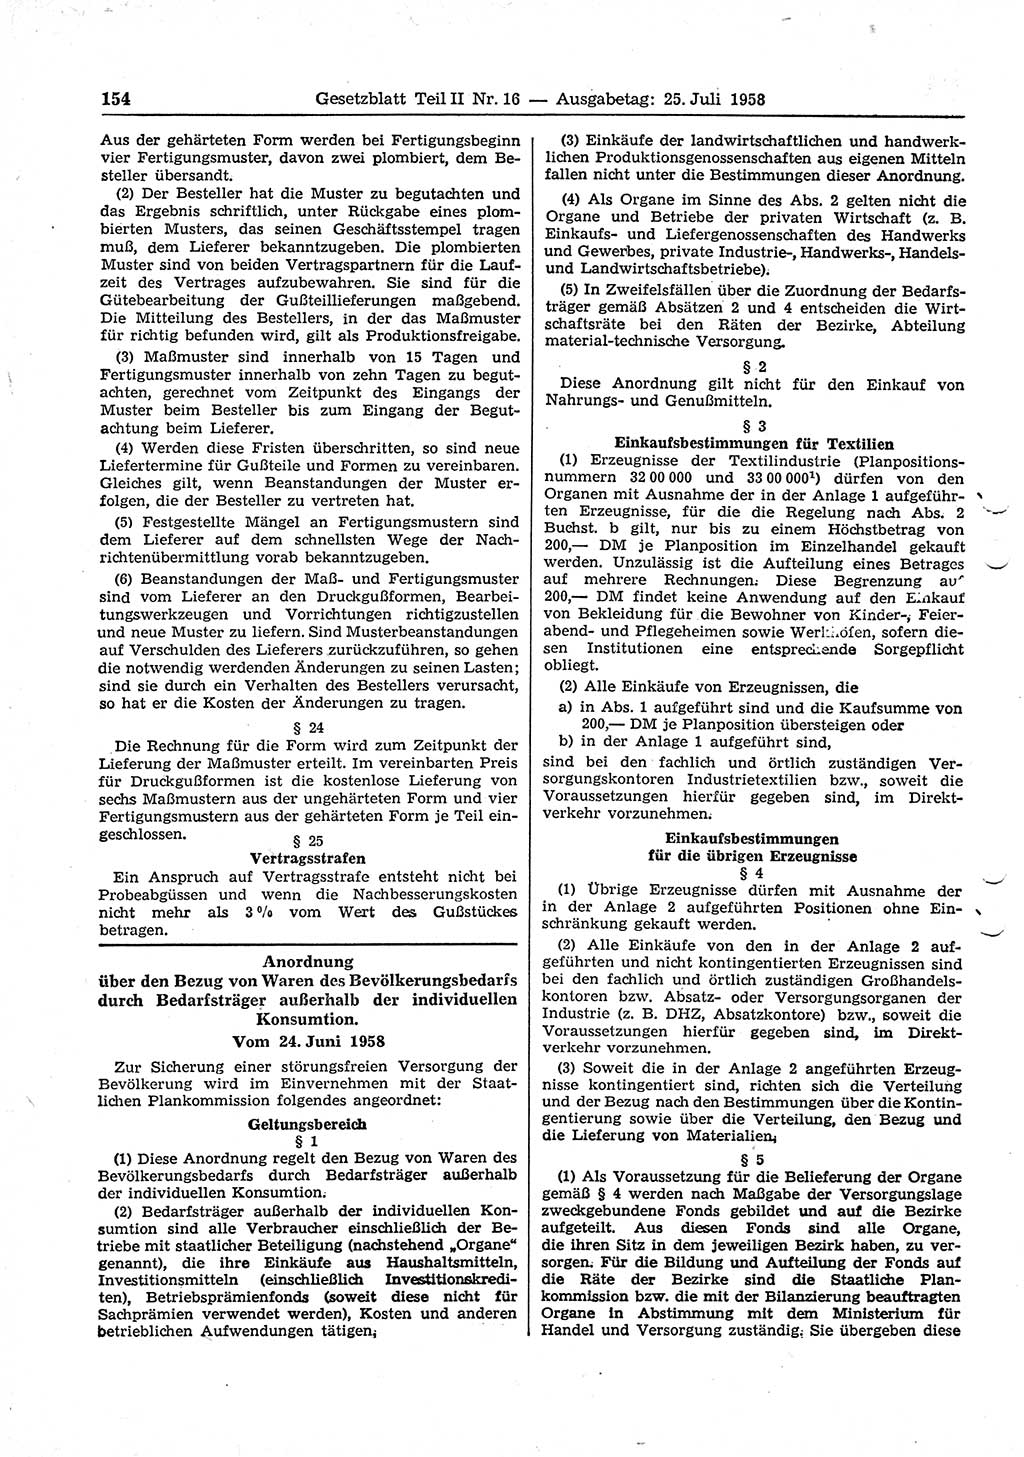 Gesetzblatt (GBl.) der Deutschen Demokratischen Republik (DDR) Teil ⅠⅠ 1958, Seite 154 (GBl. DDR ⅠⅠ 1958, S. 154)